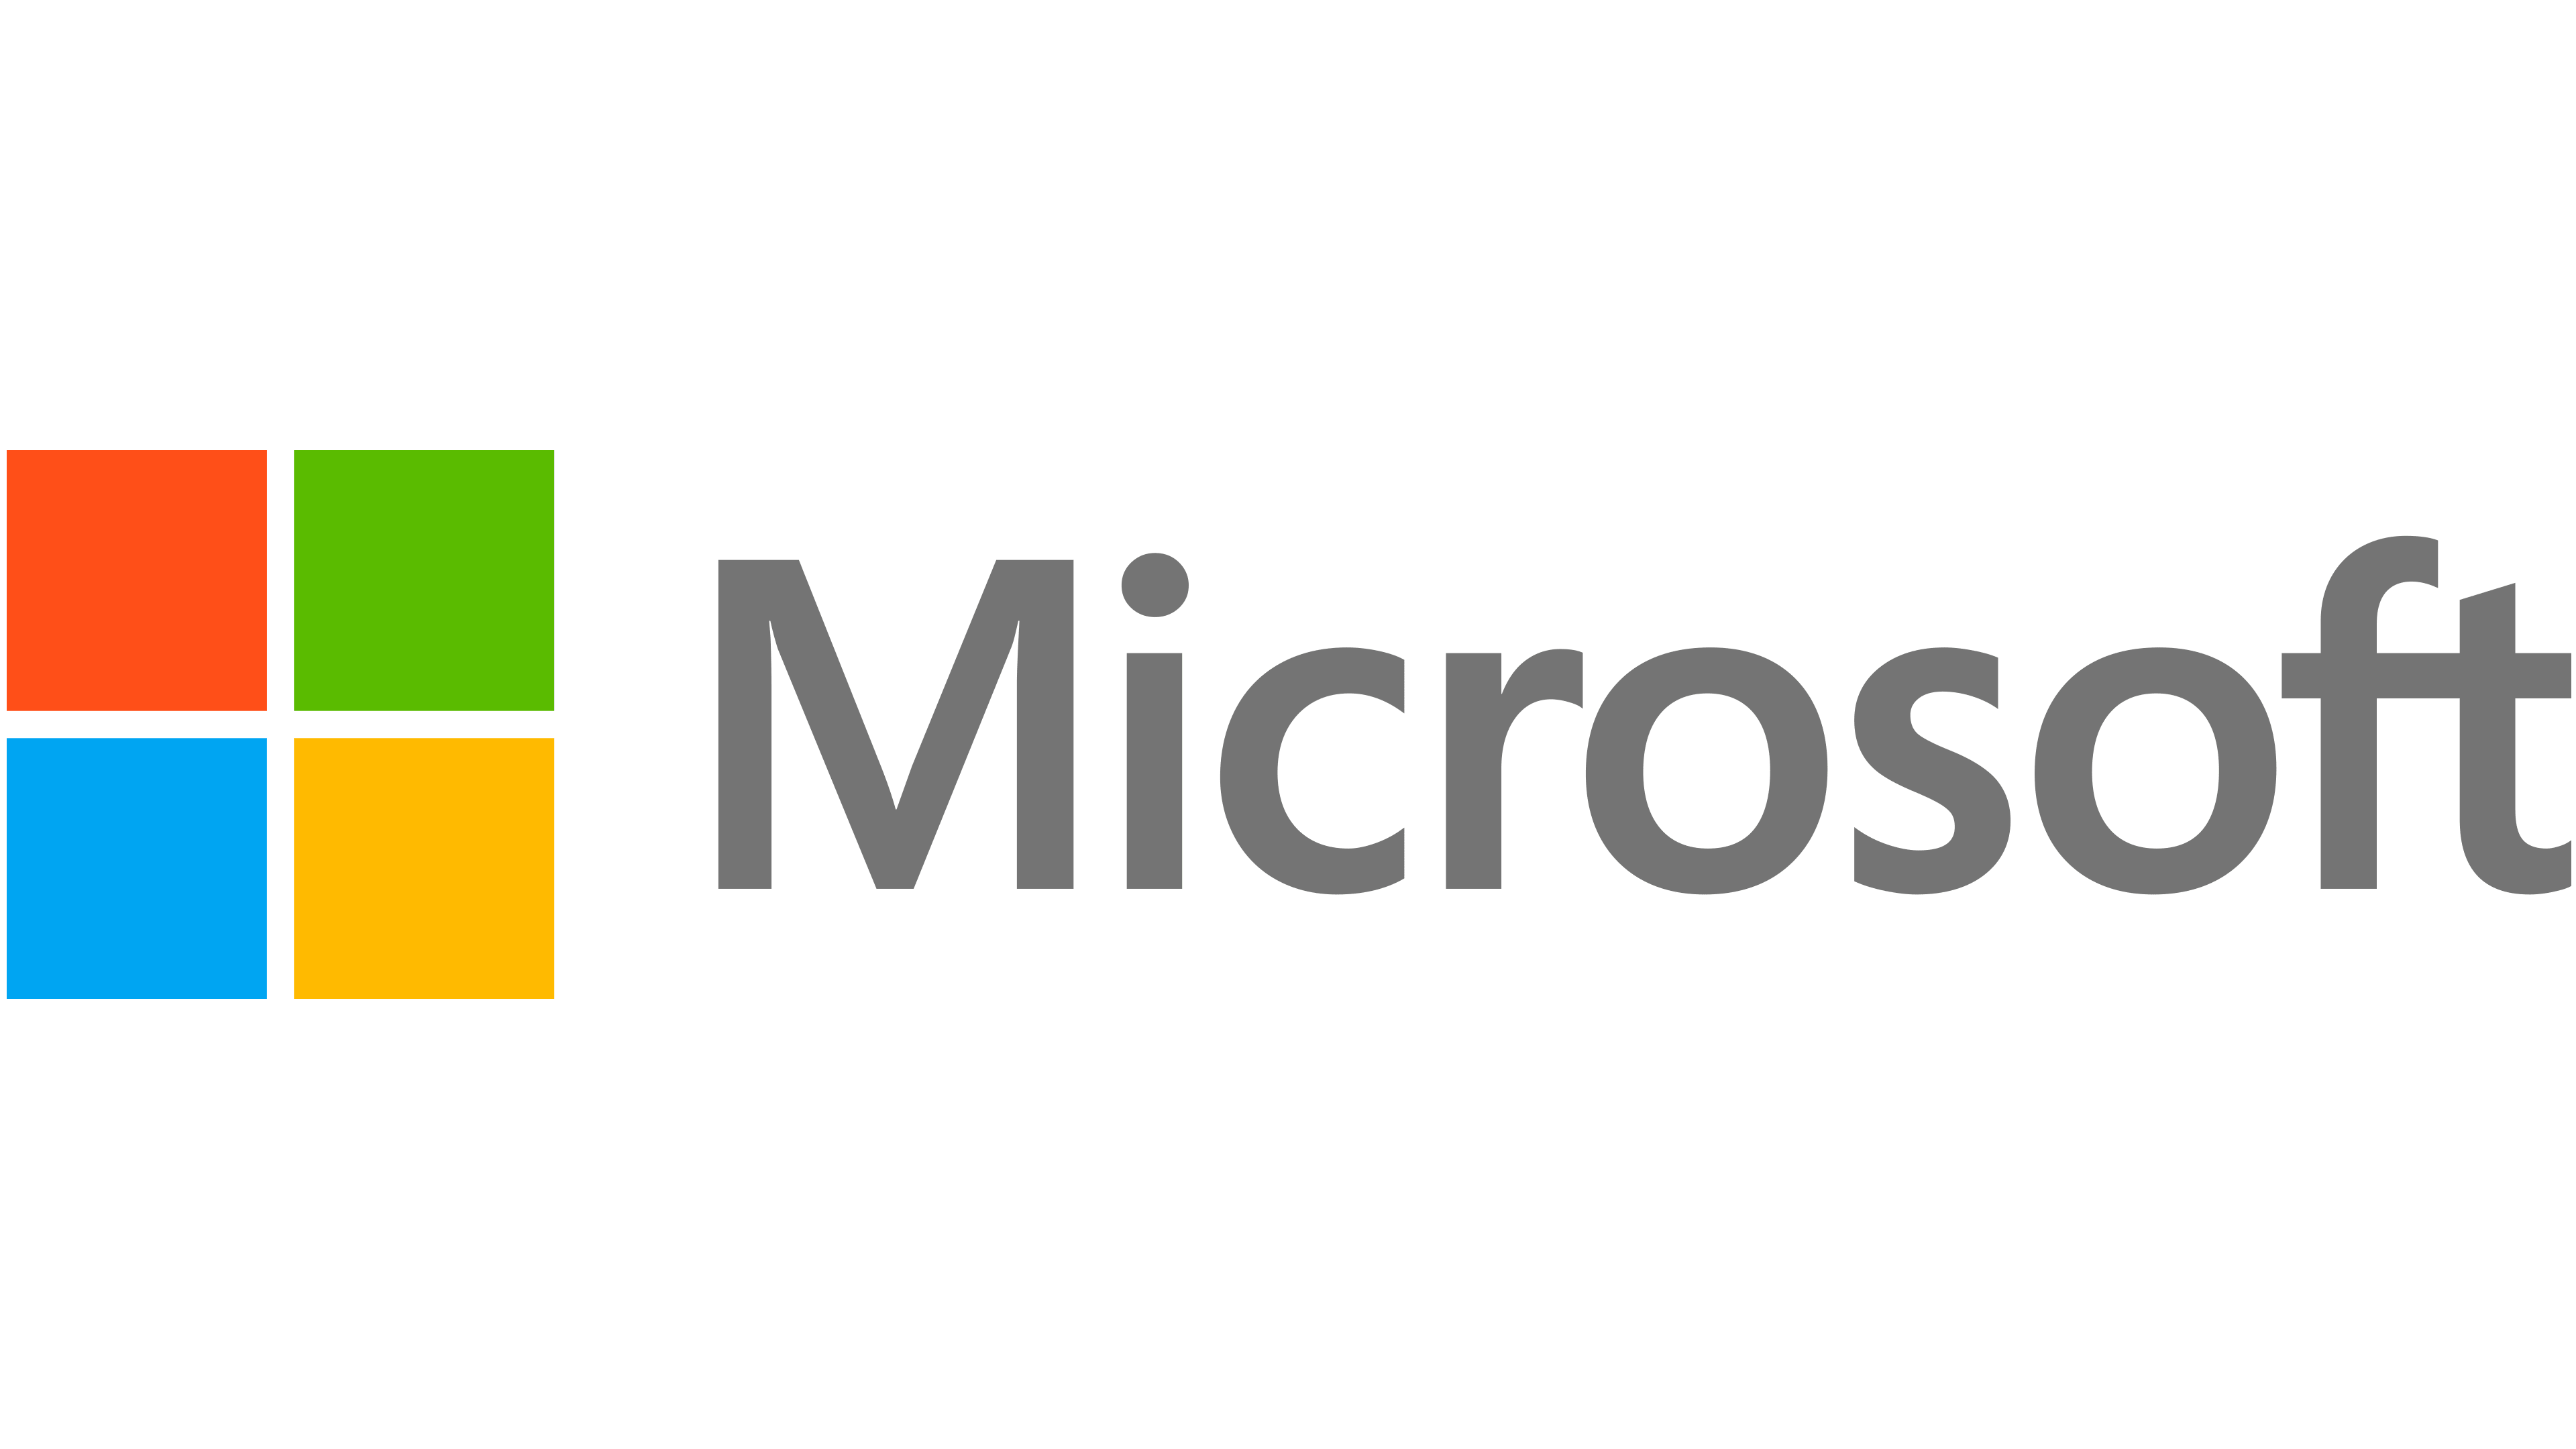 Microsoft: nube, equipos, aplicaciones y juegos | Globaloffice.com.mx